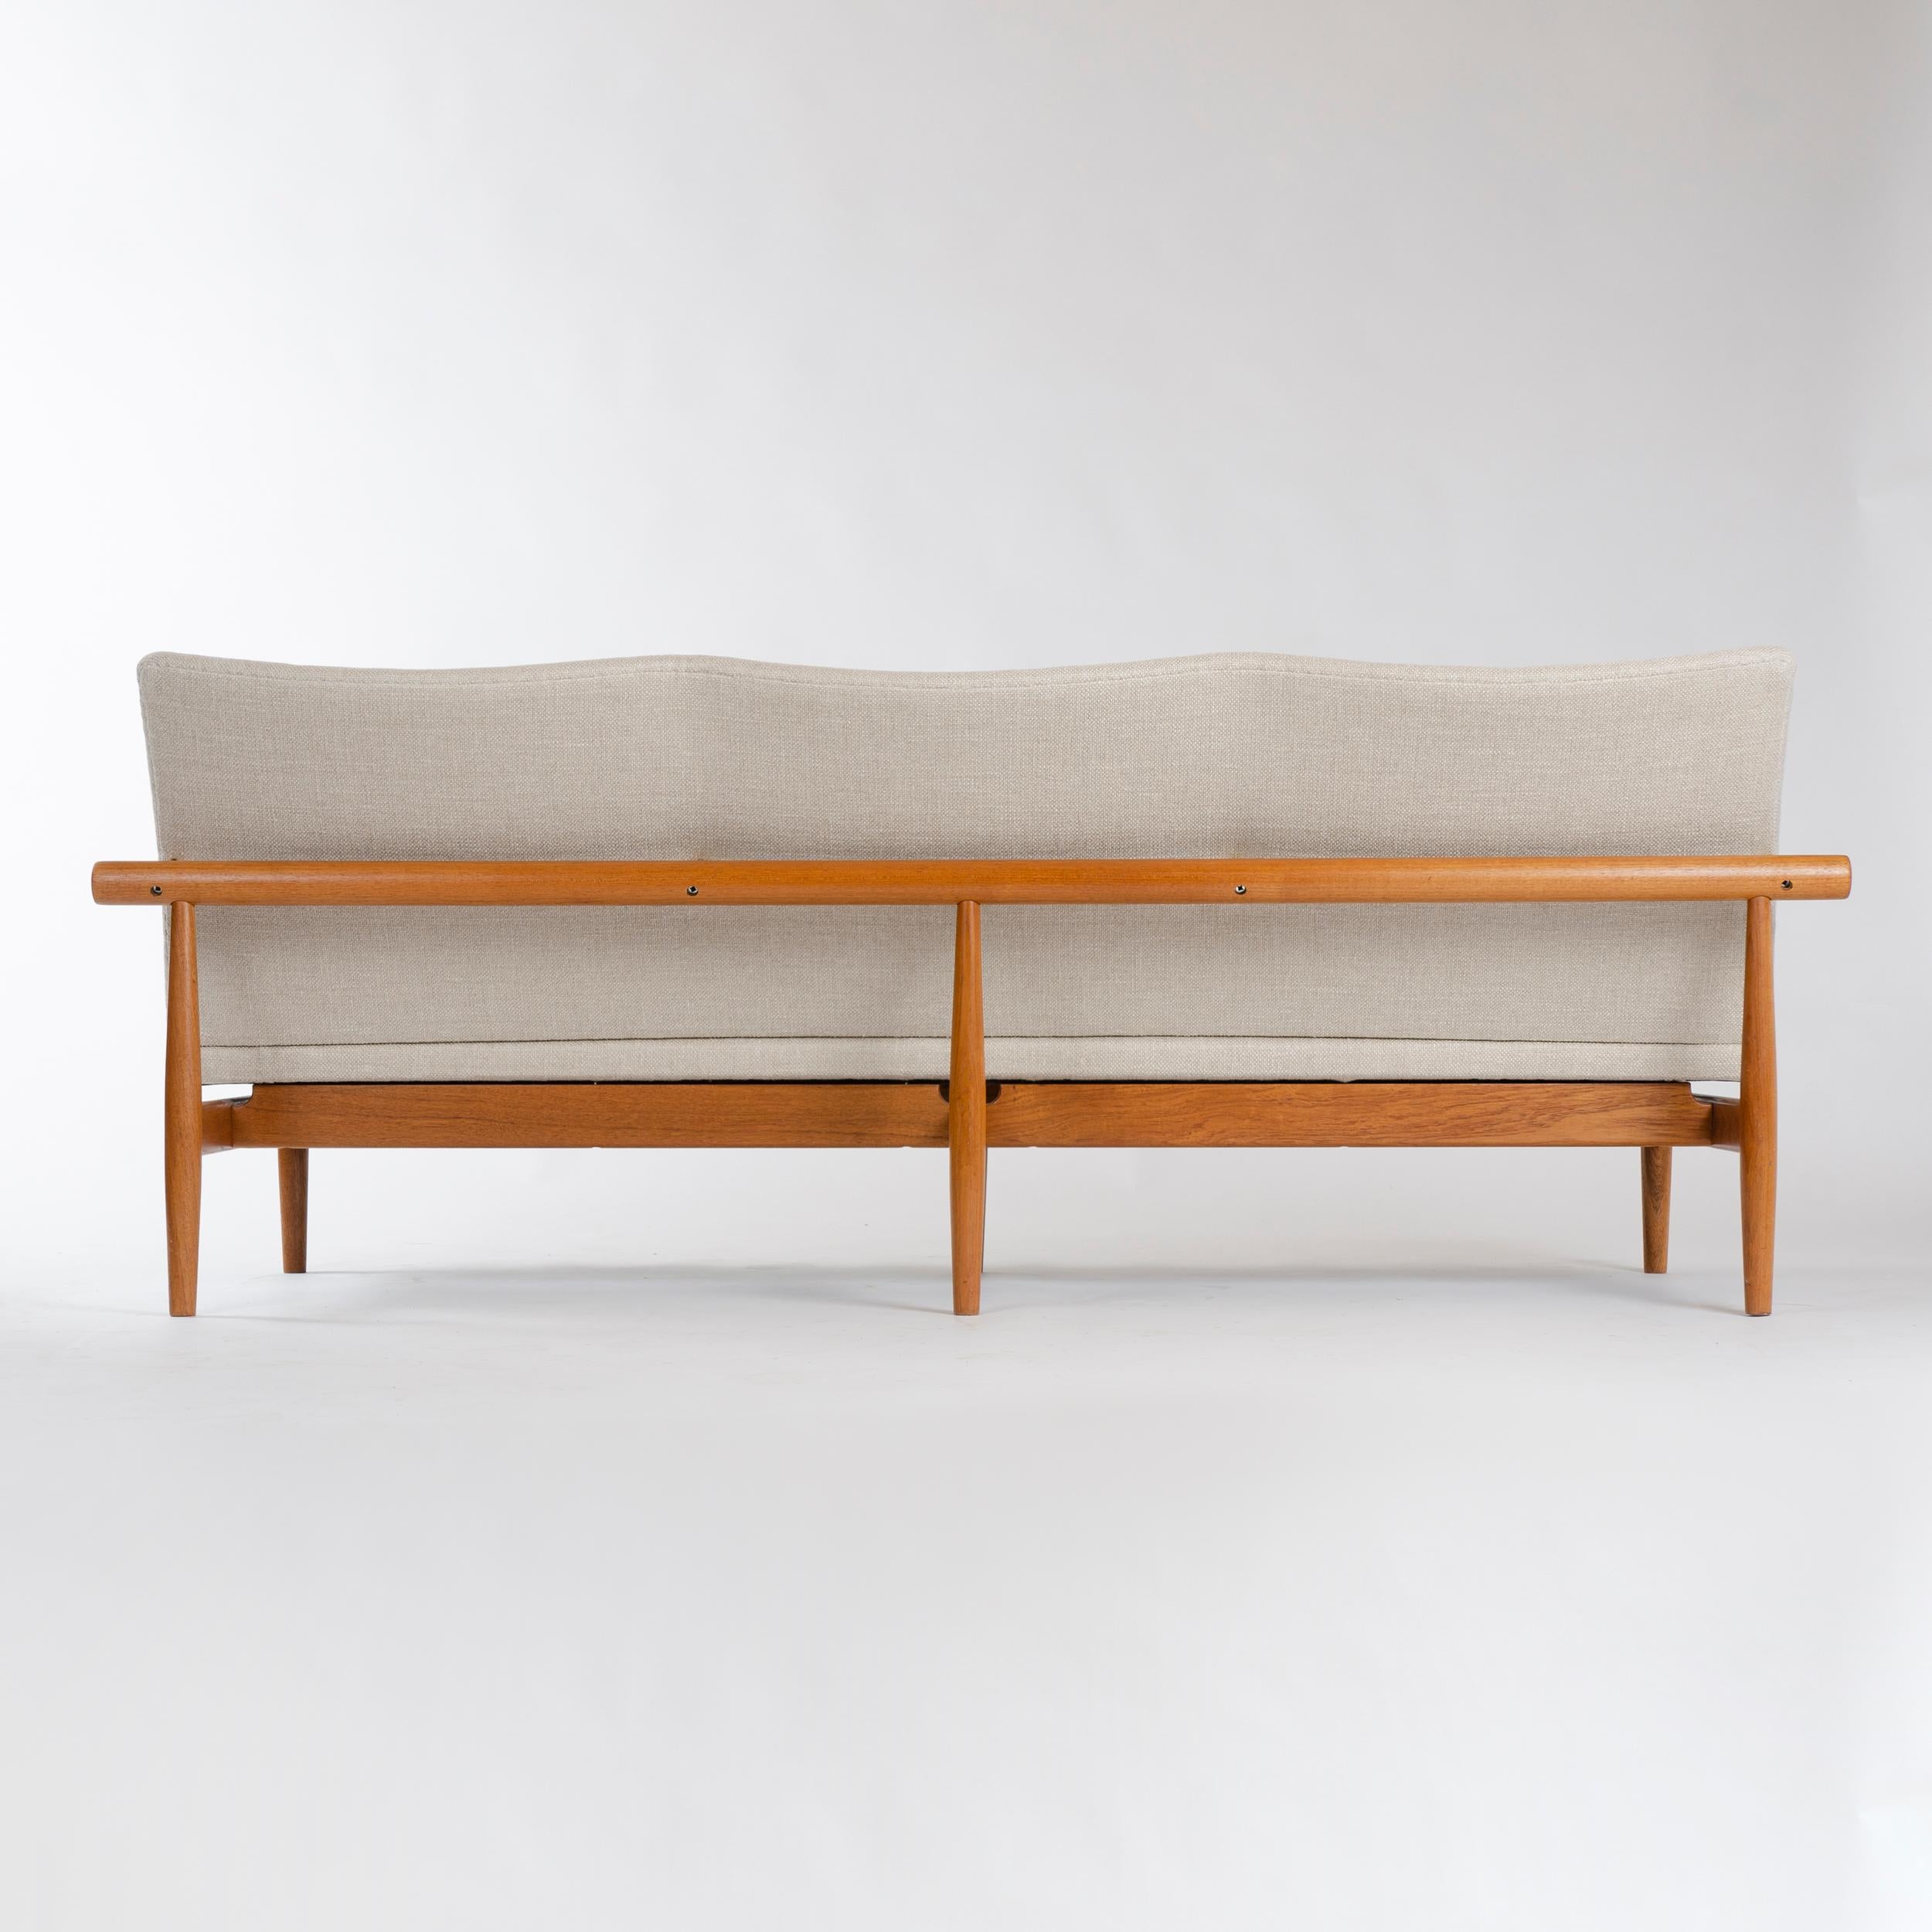 Mid-20th Century 1950s Danish 'Japan Sofa' in Linen Upholstery by Finn Juhl for France & Son